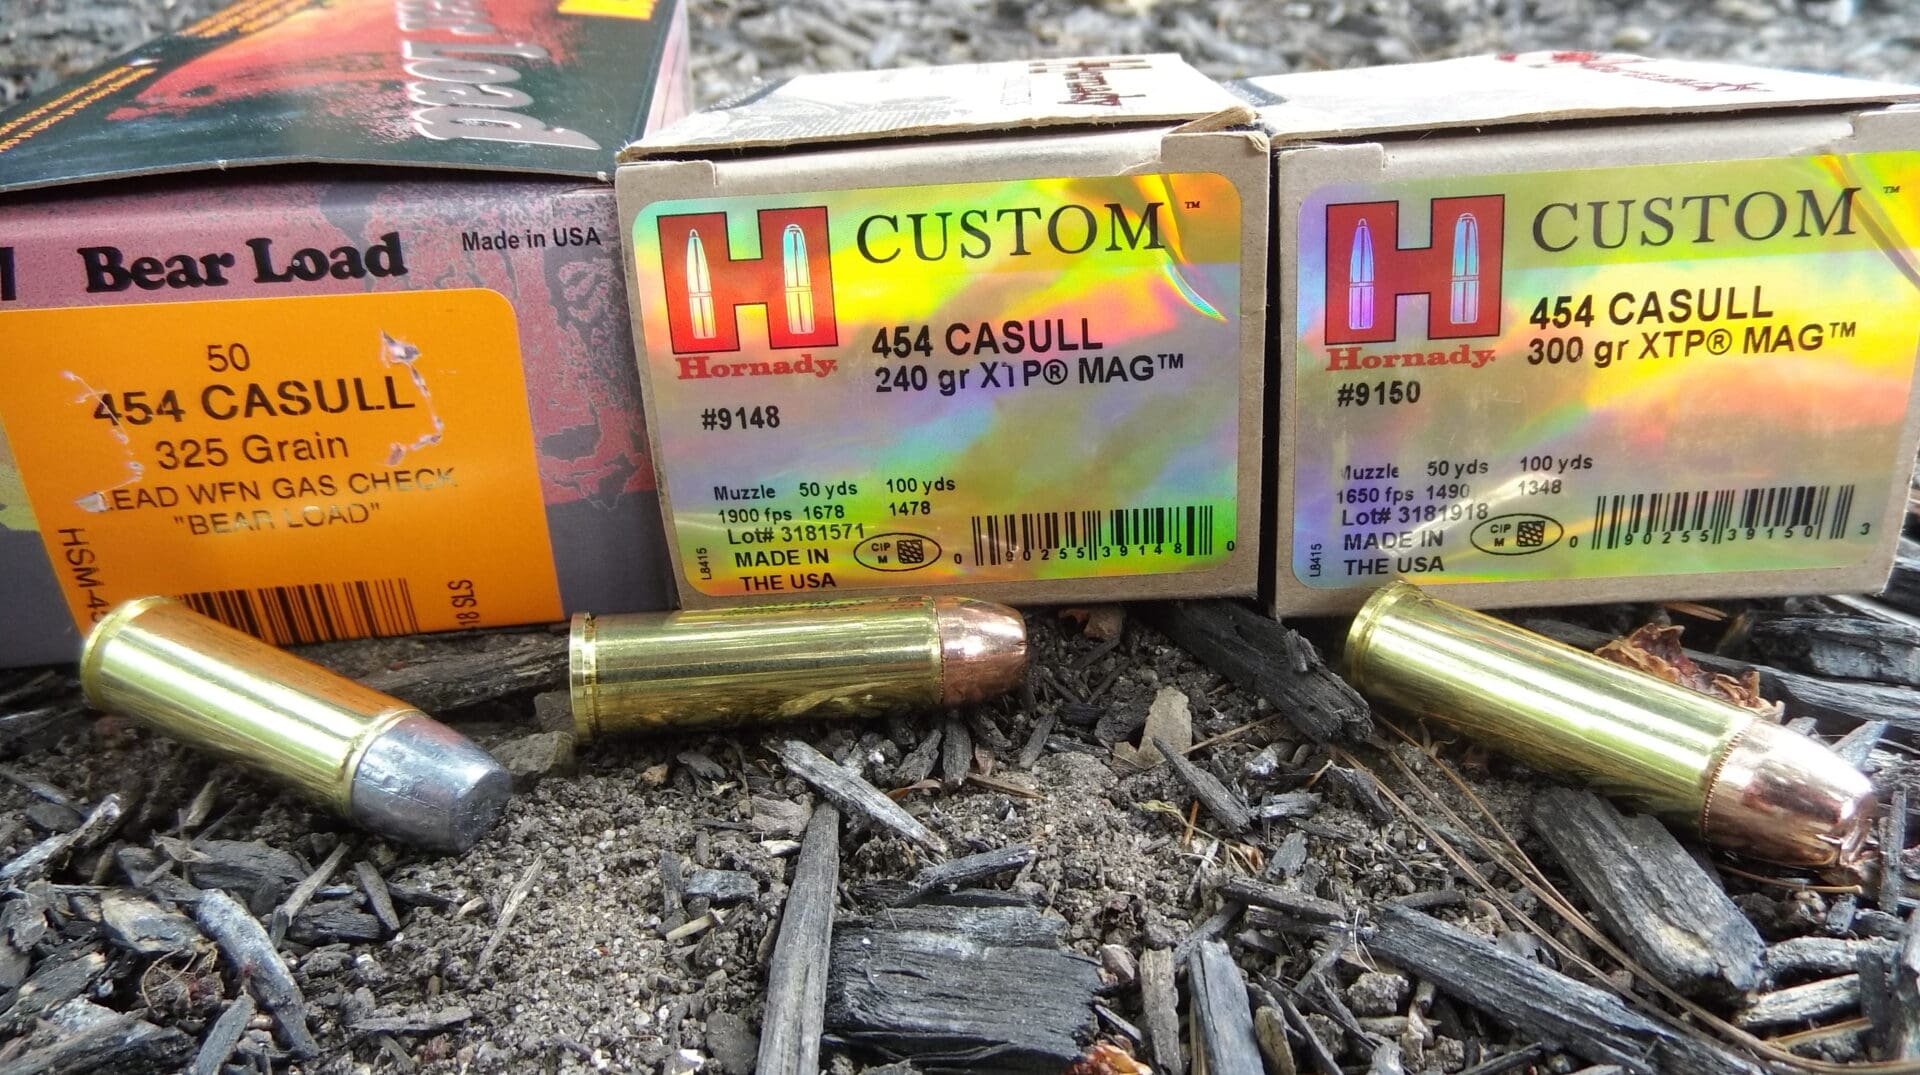 454 Casull bear ammunition loads